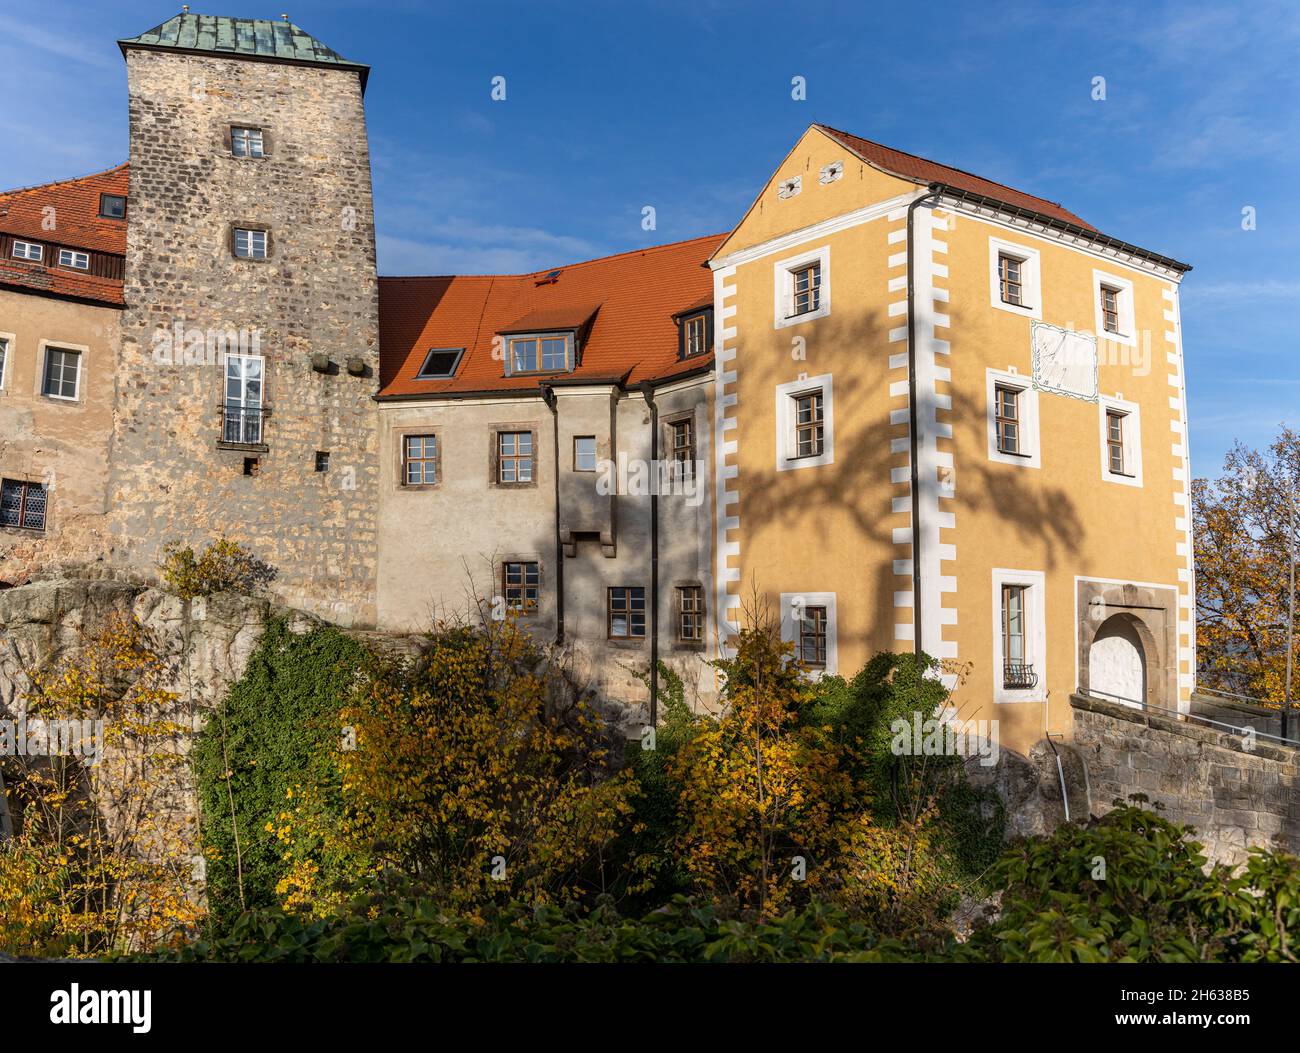 Impressionen von der Burg Hohnstein im Elbsandsteingebirge sächsische Schweiz Stock Photo